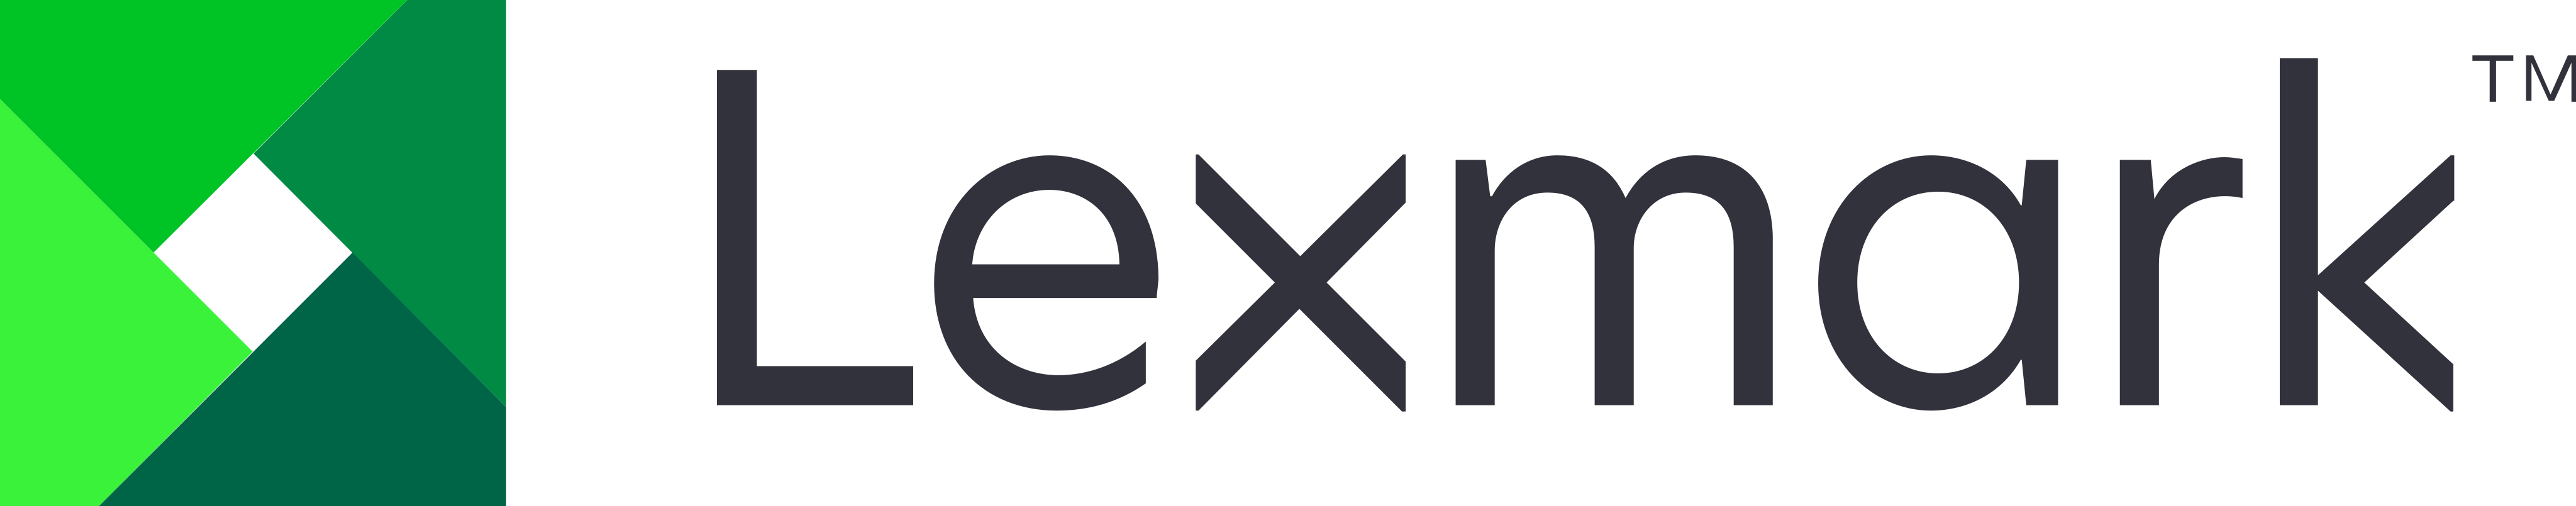 lexmark logo 7 - Lexmark Logo